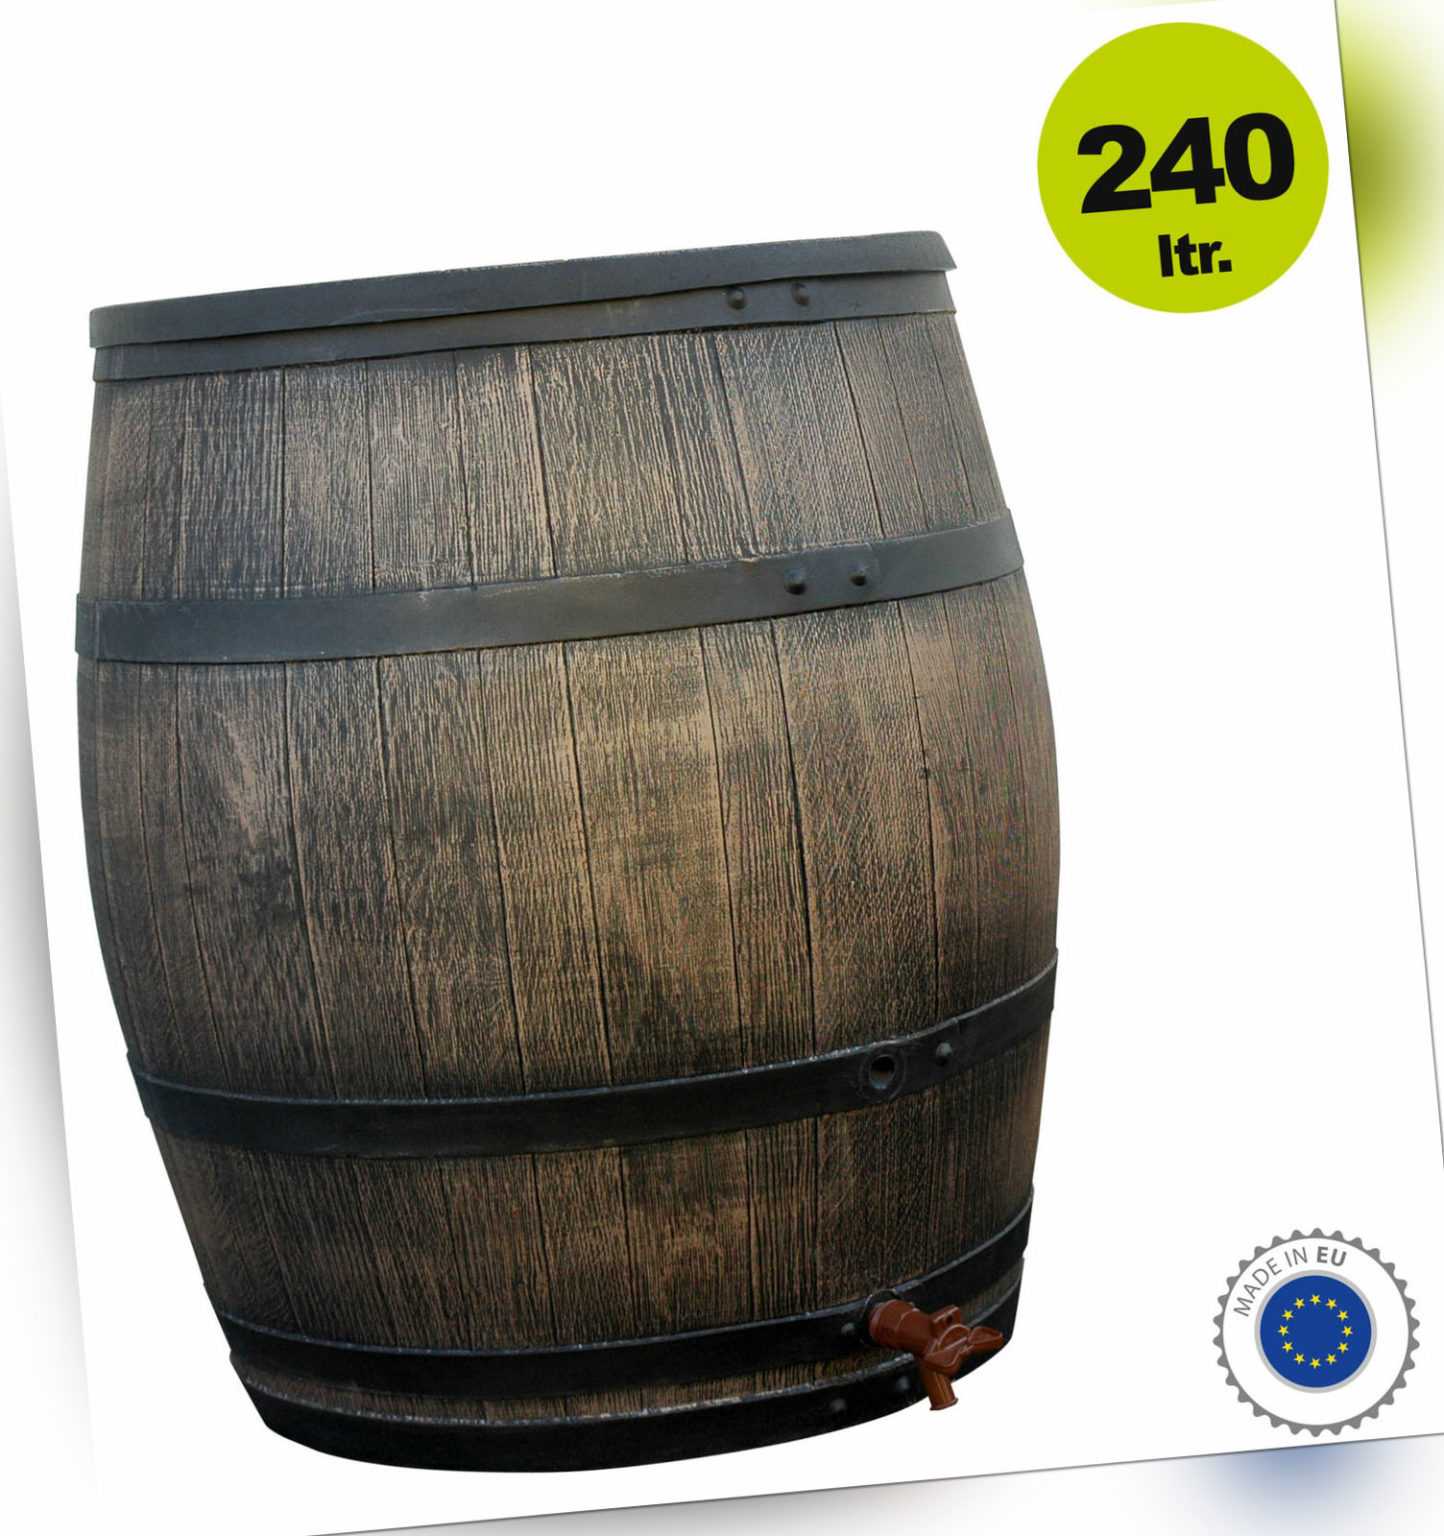 Wassertank / Regentonne in Wein-Fass Design 240 Liter